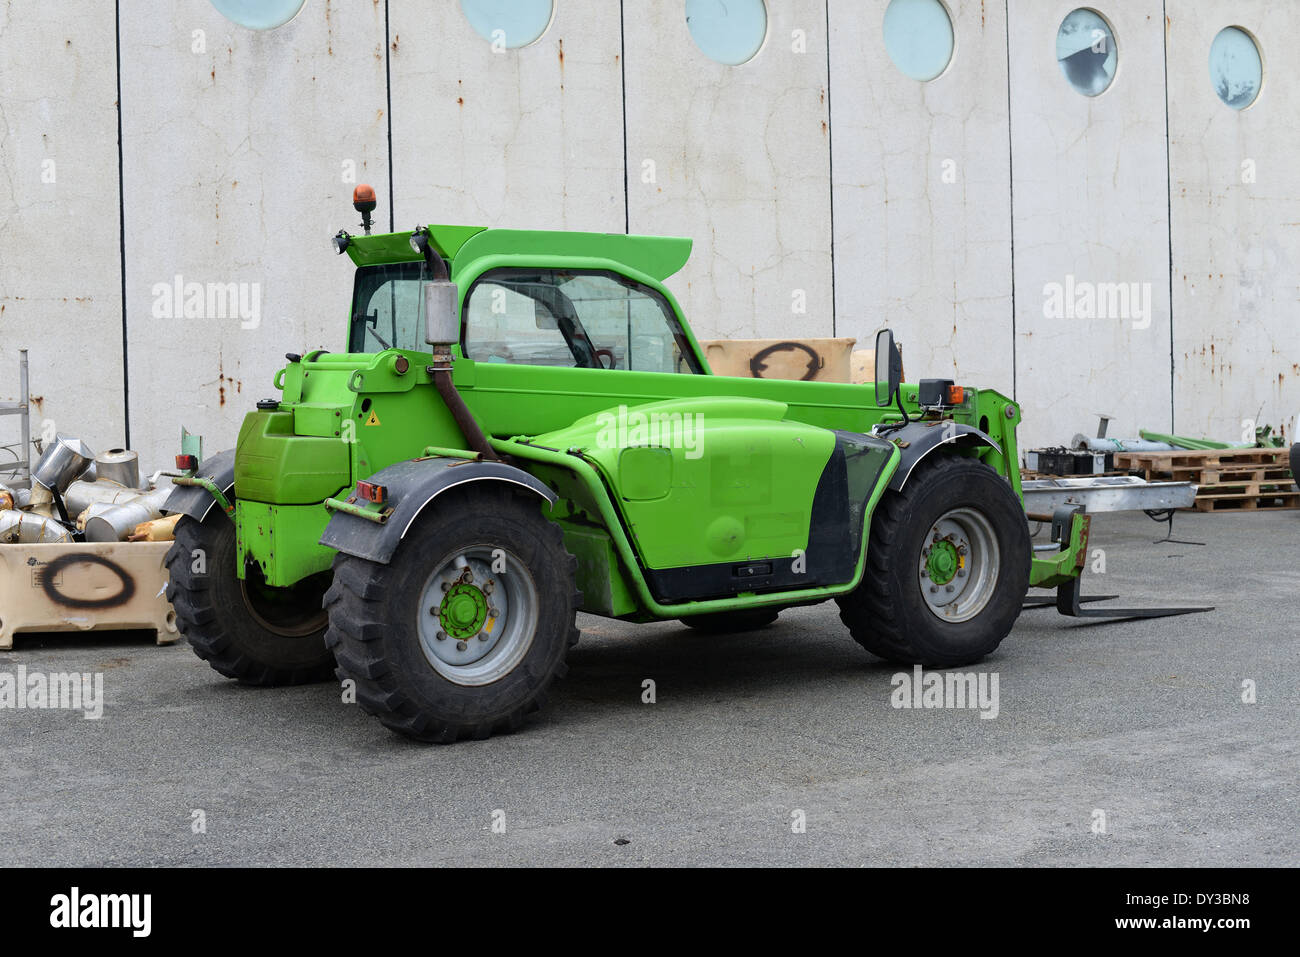 Icelandic forklift truck Stock Photo